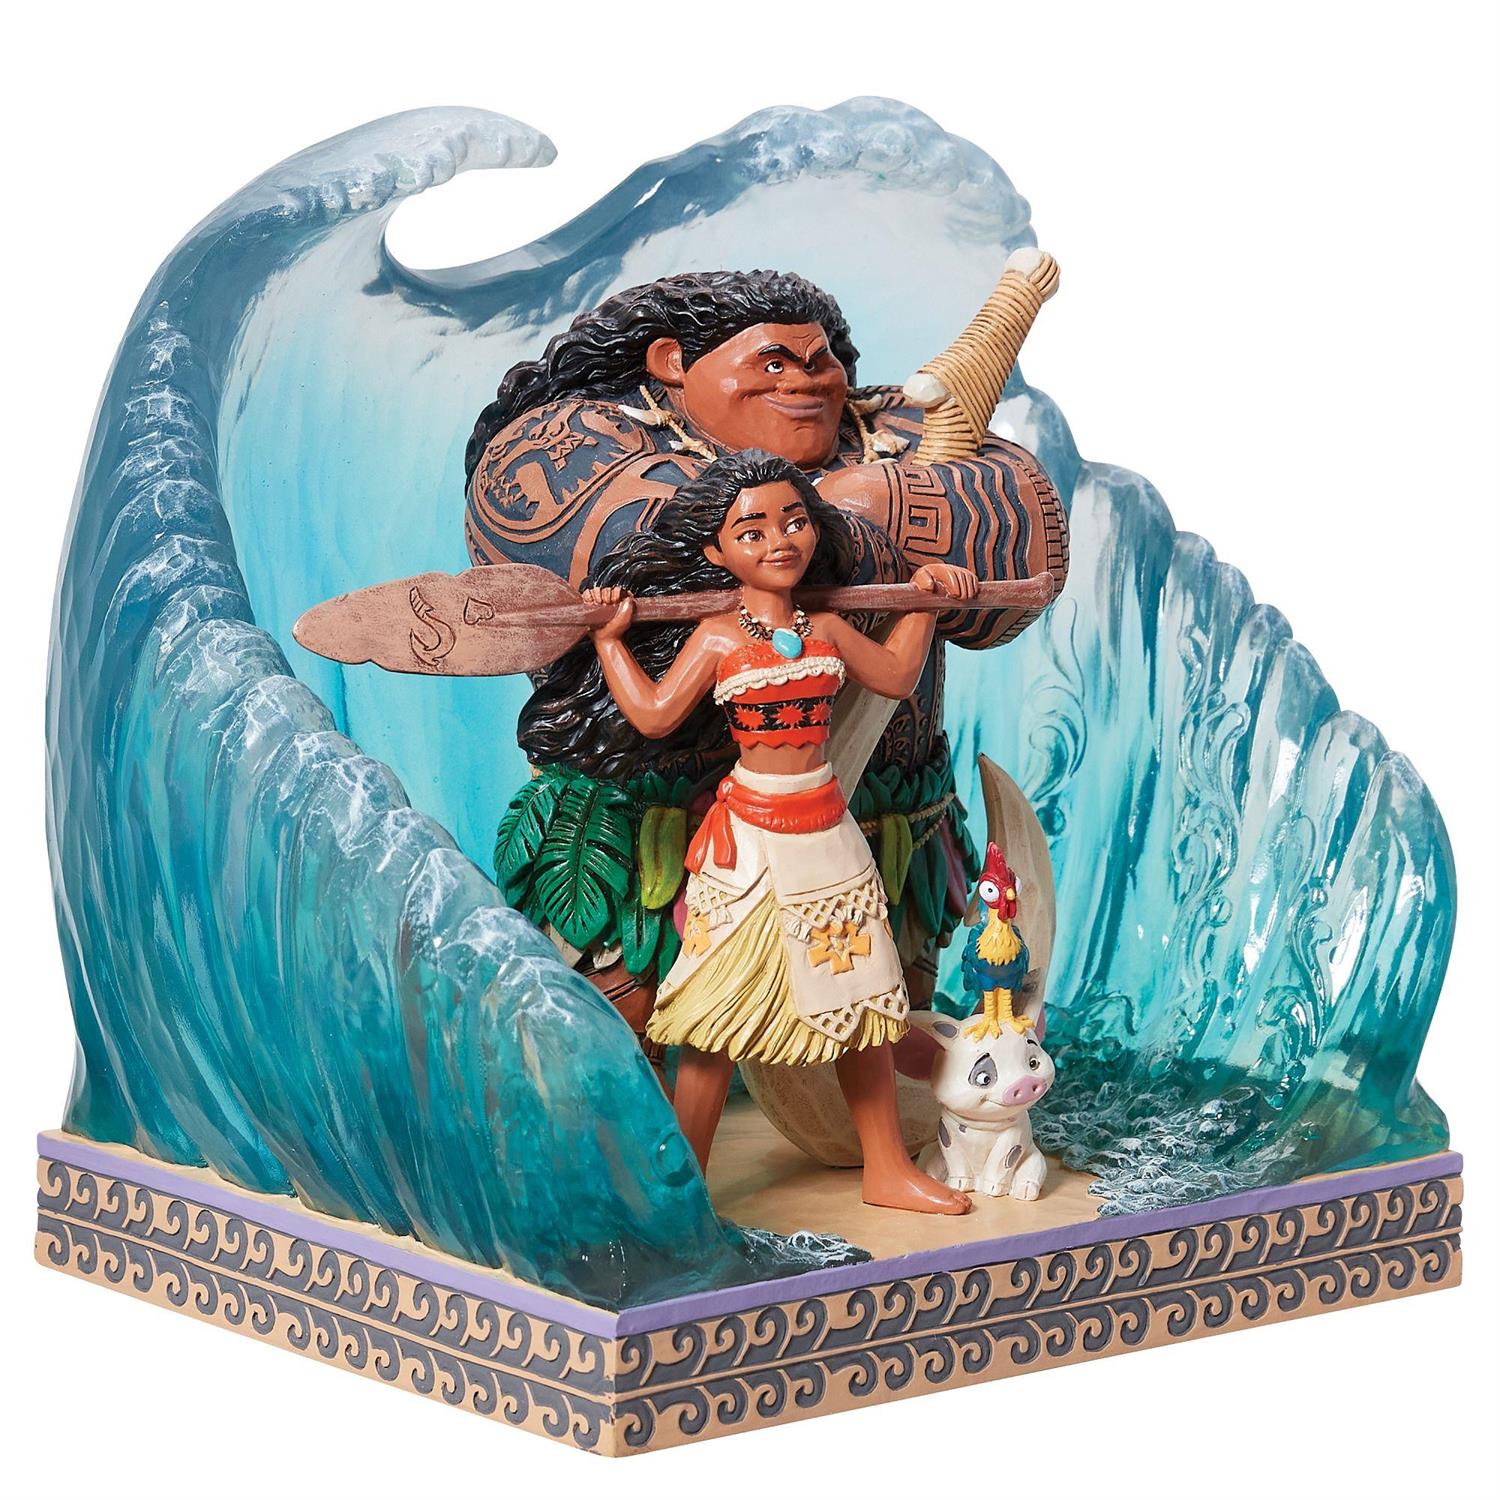 Moana Materials: Polynesian Art in Disney's Moana - EasyBlog - Bowers Museum